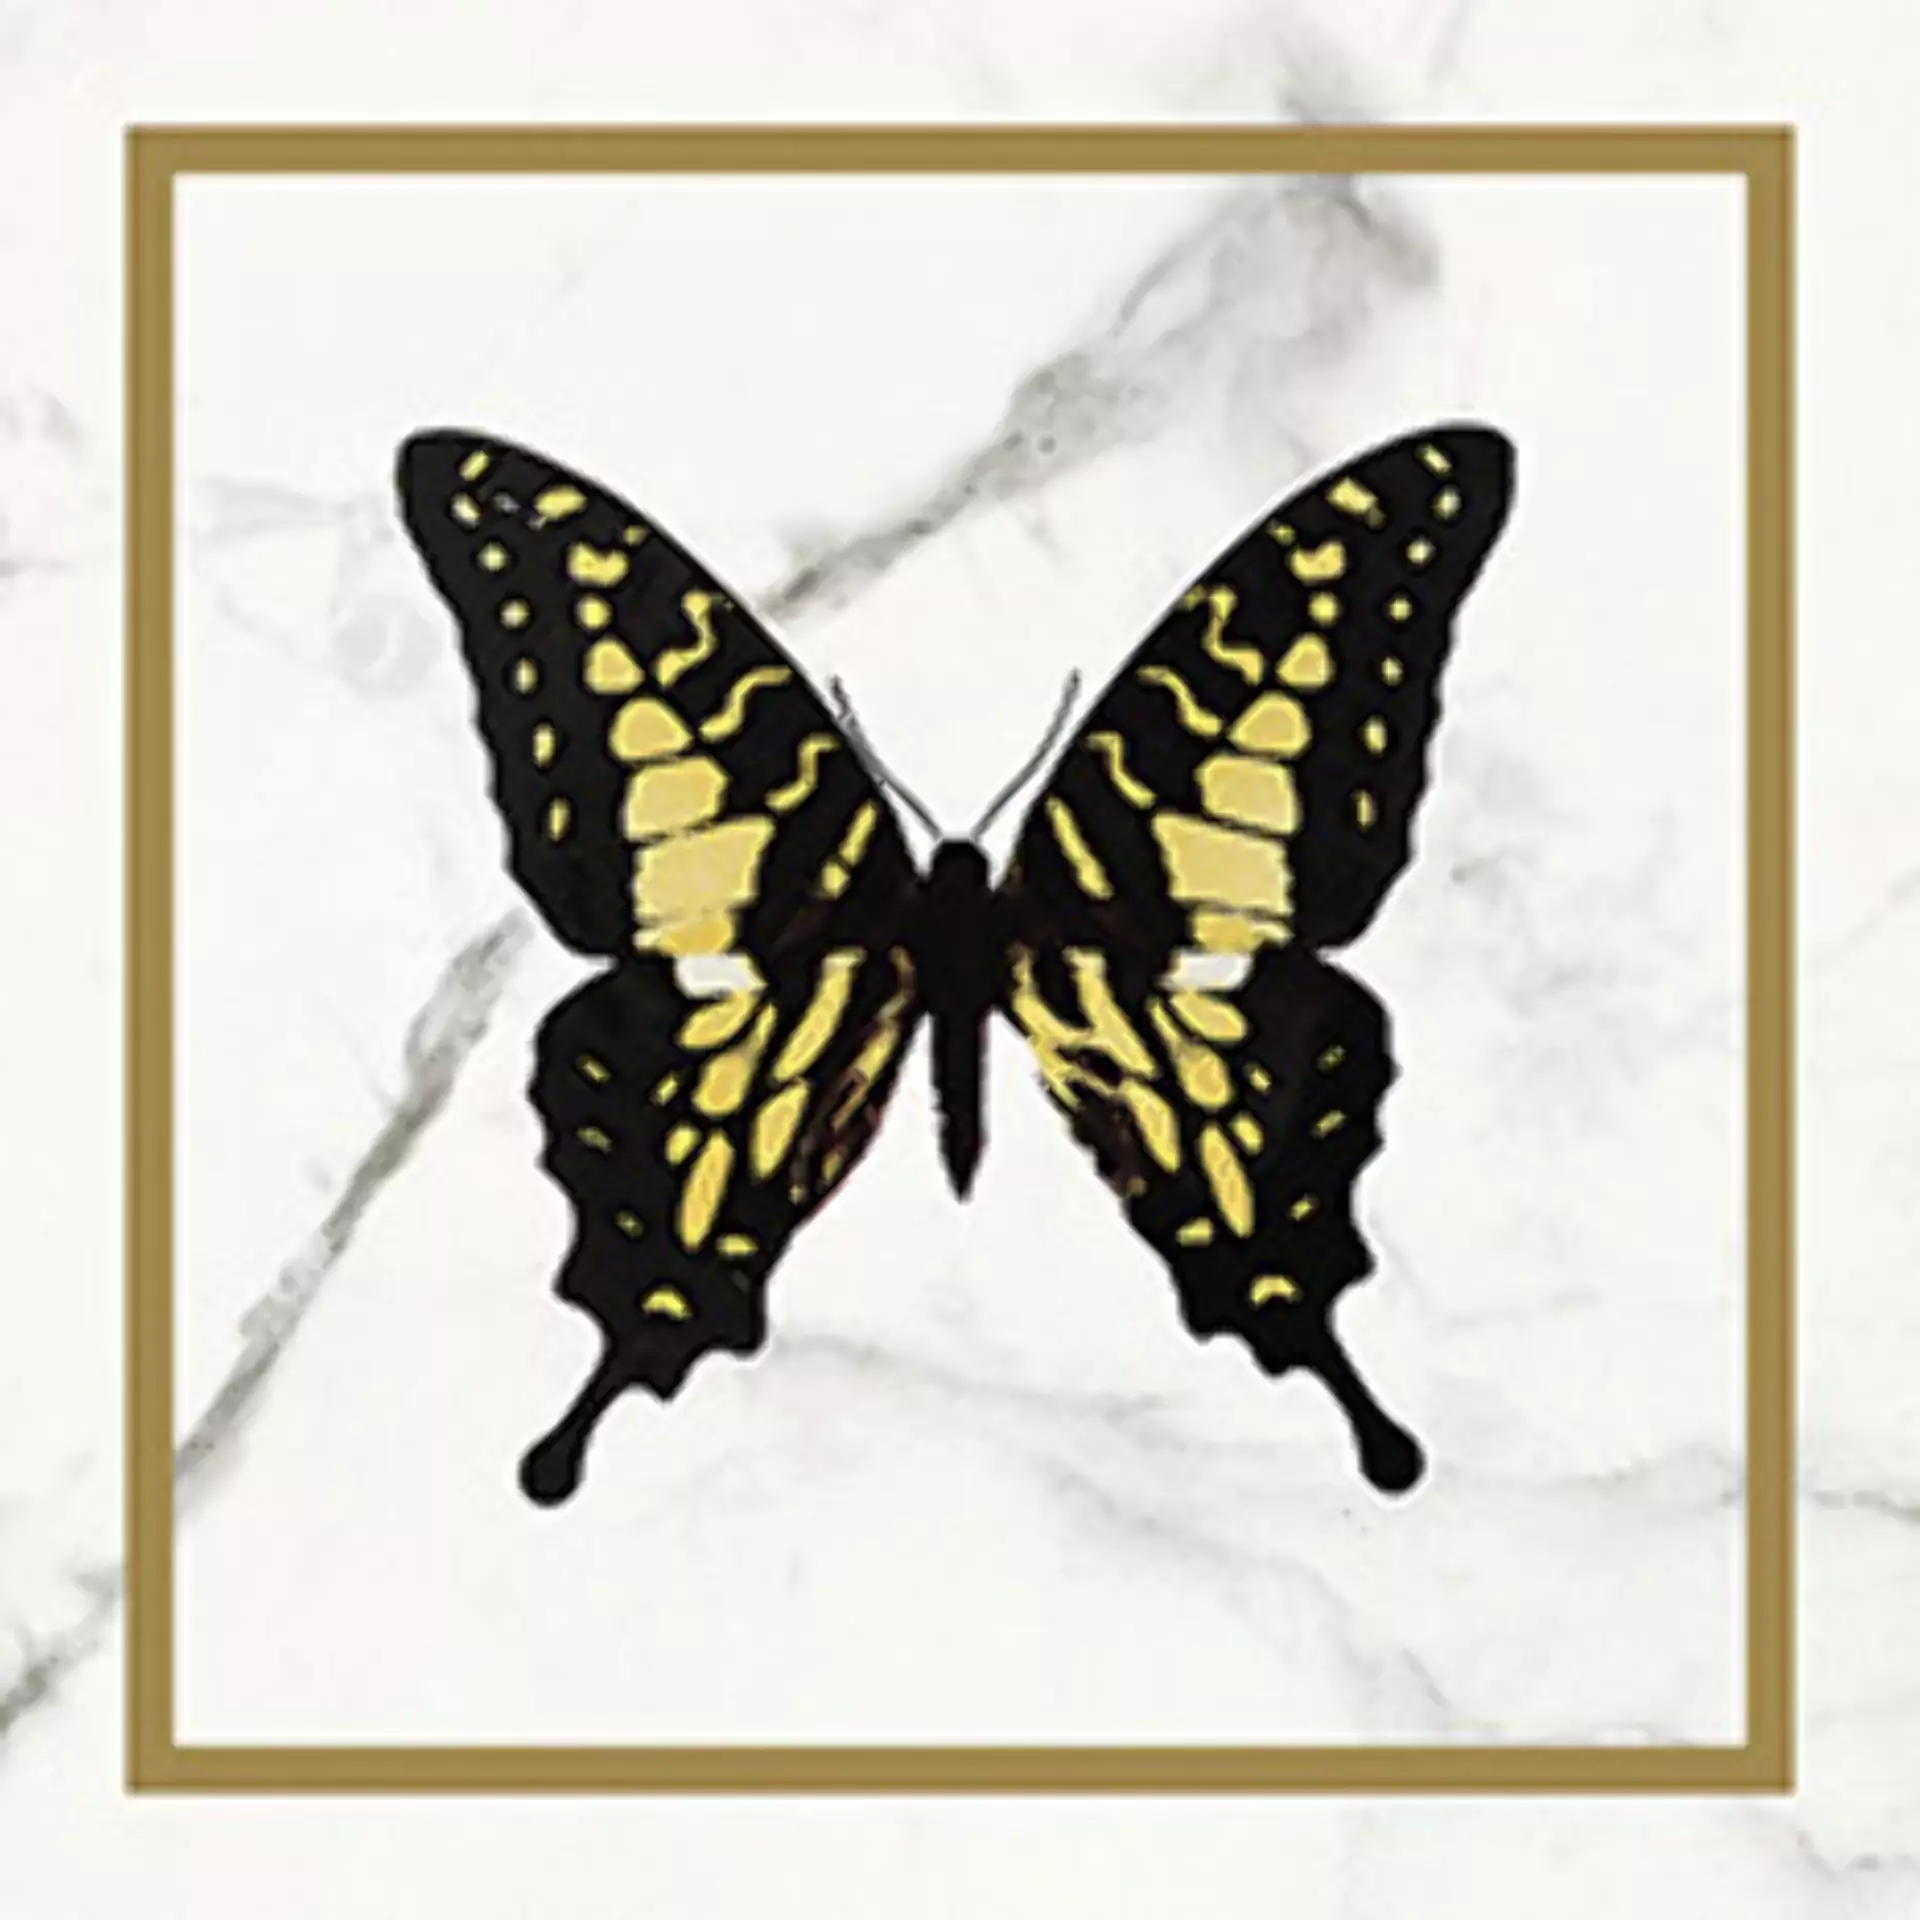 Wandfliese Villeroy & Boch Victorian White - Gold Glossy White - Gold 1222-MK0E glaenzend 20x20cm Dekor Butterfly rektifiziert 10mm